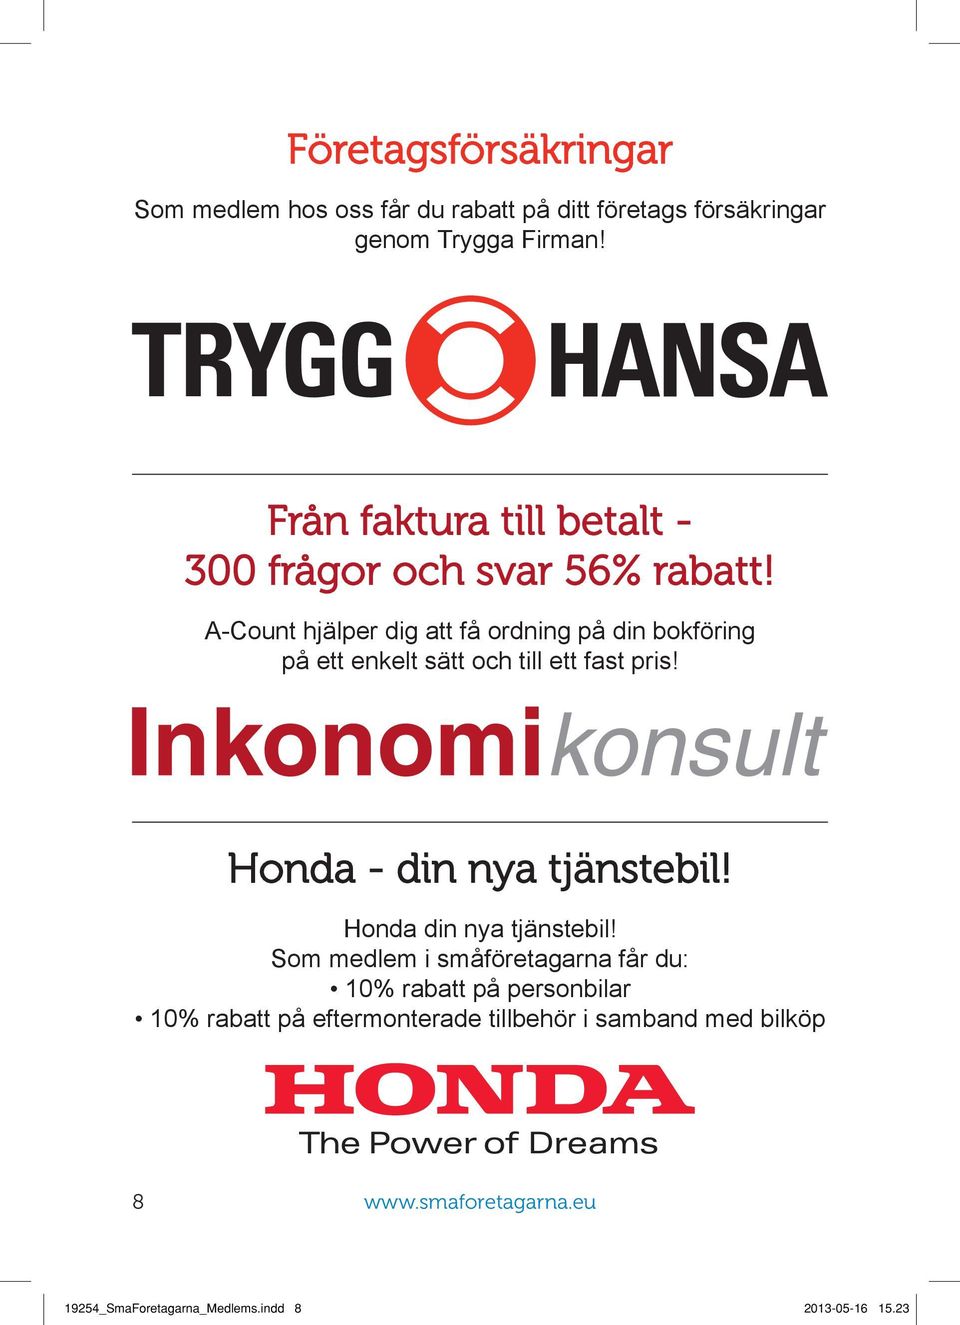 A-Count hjälper dig att få ordning på din bokföring på ett enkelt sätt och till ett fast pris! Honda - din nya tjänstebil!